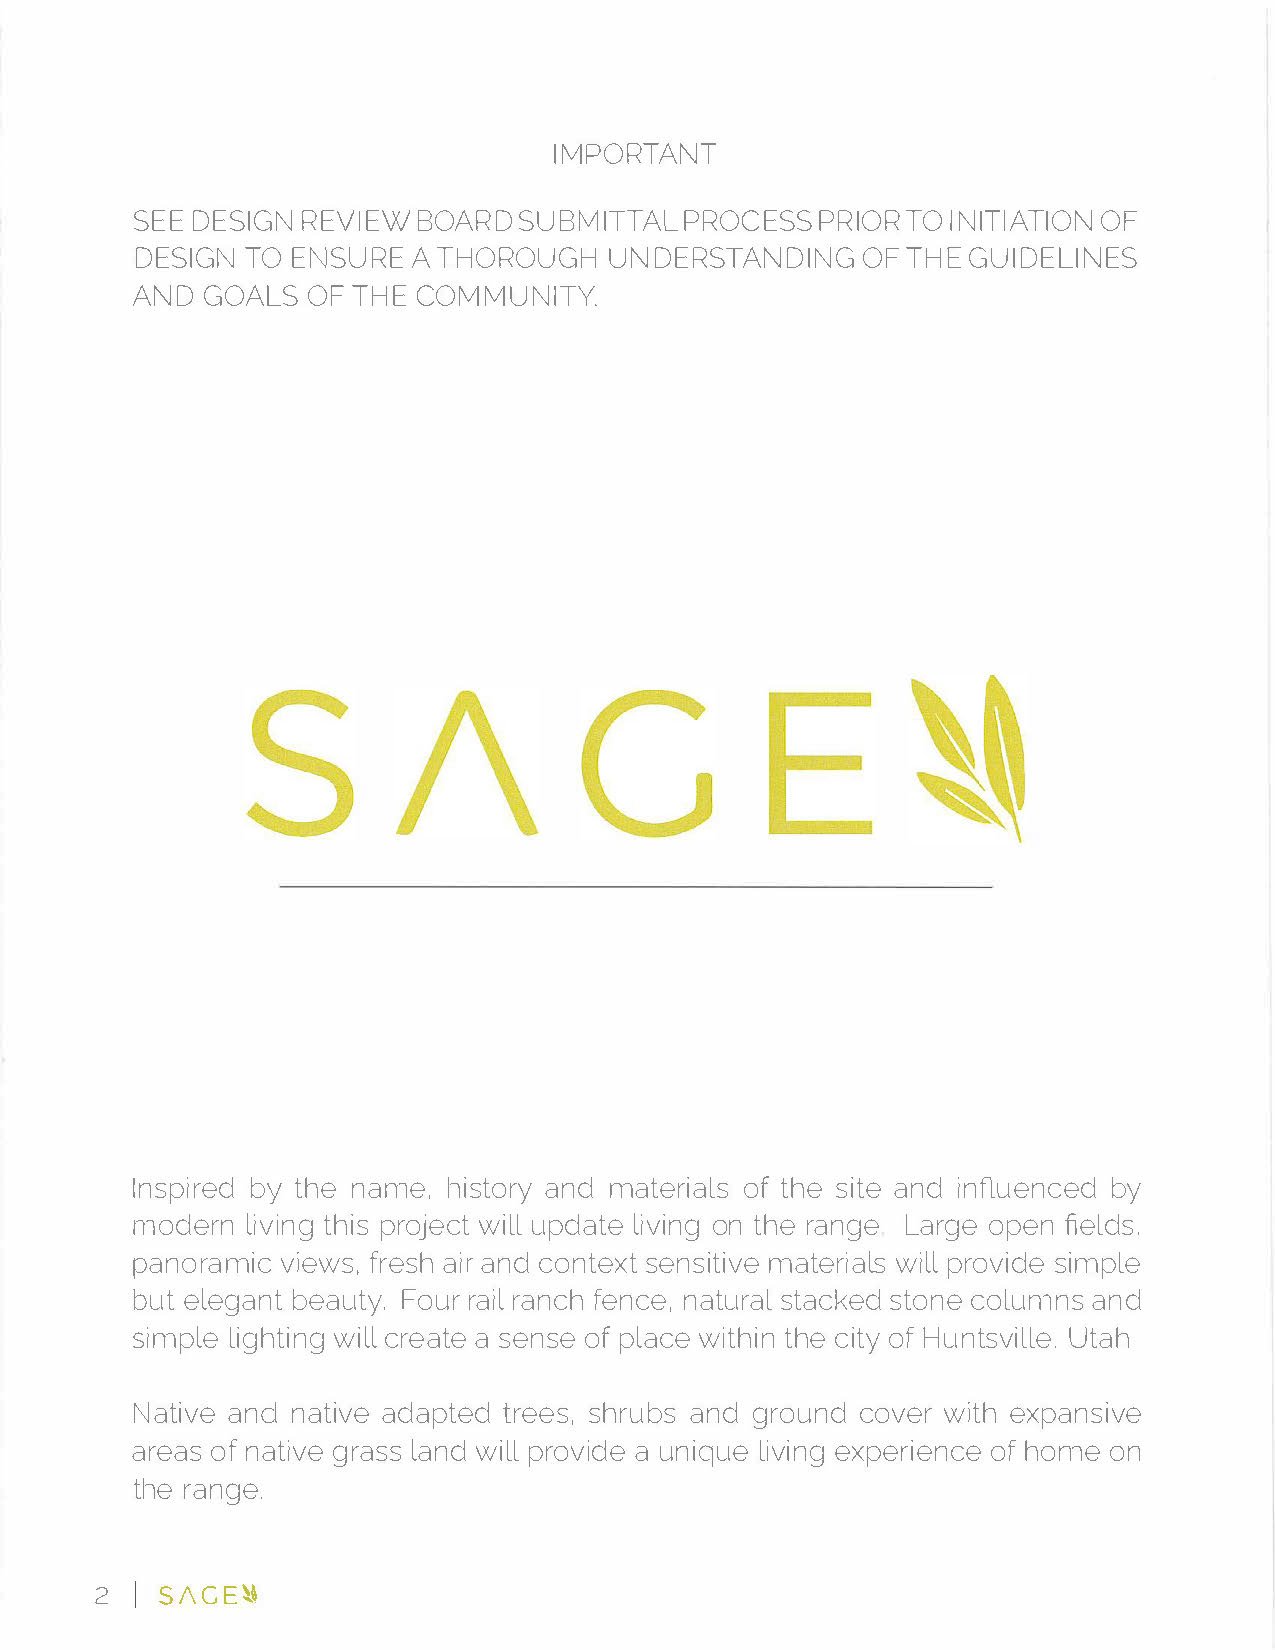 sage design guidelines 02